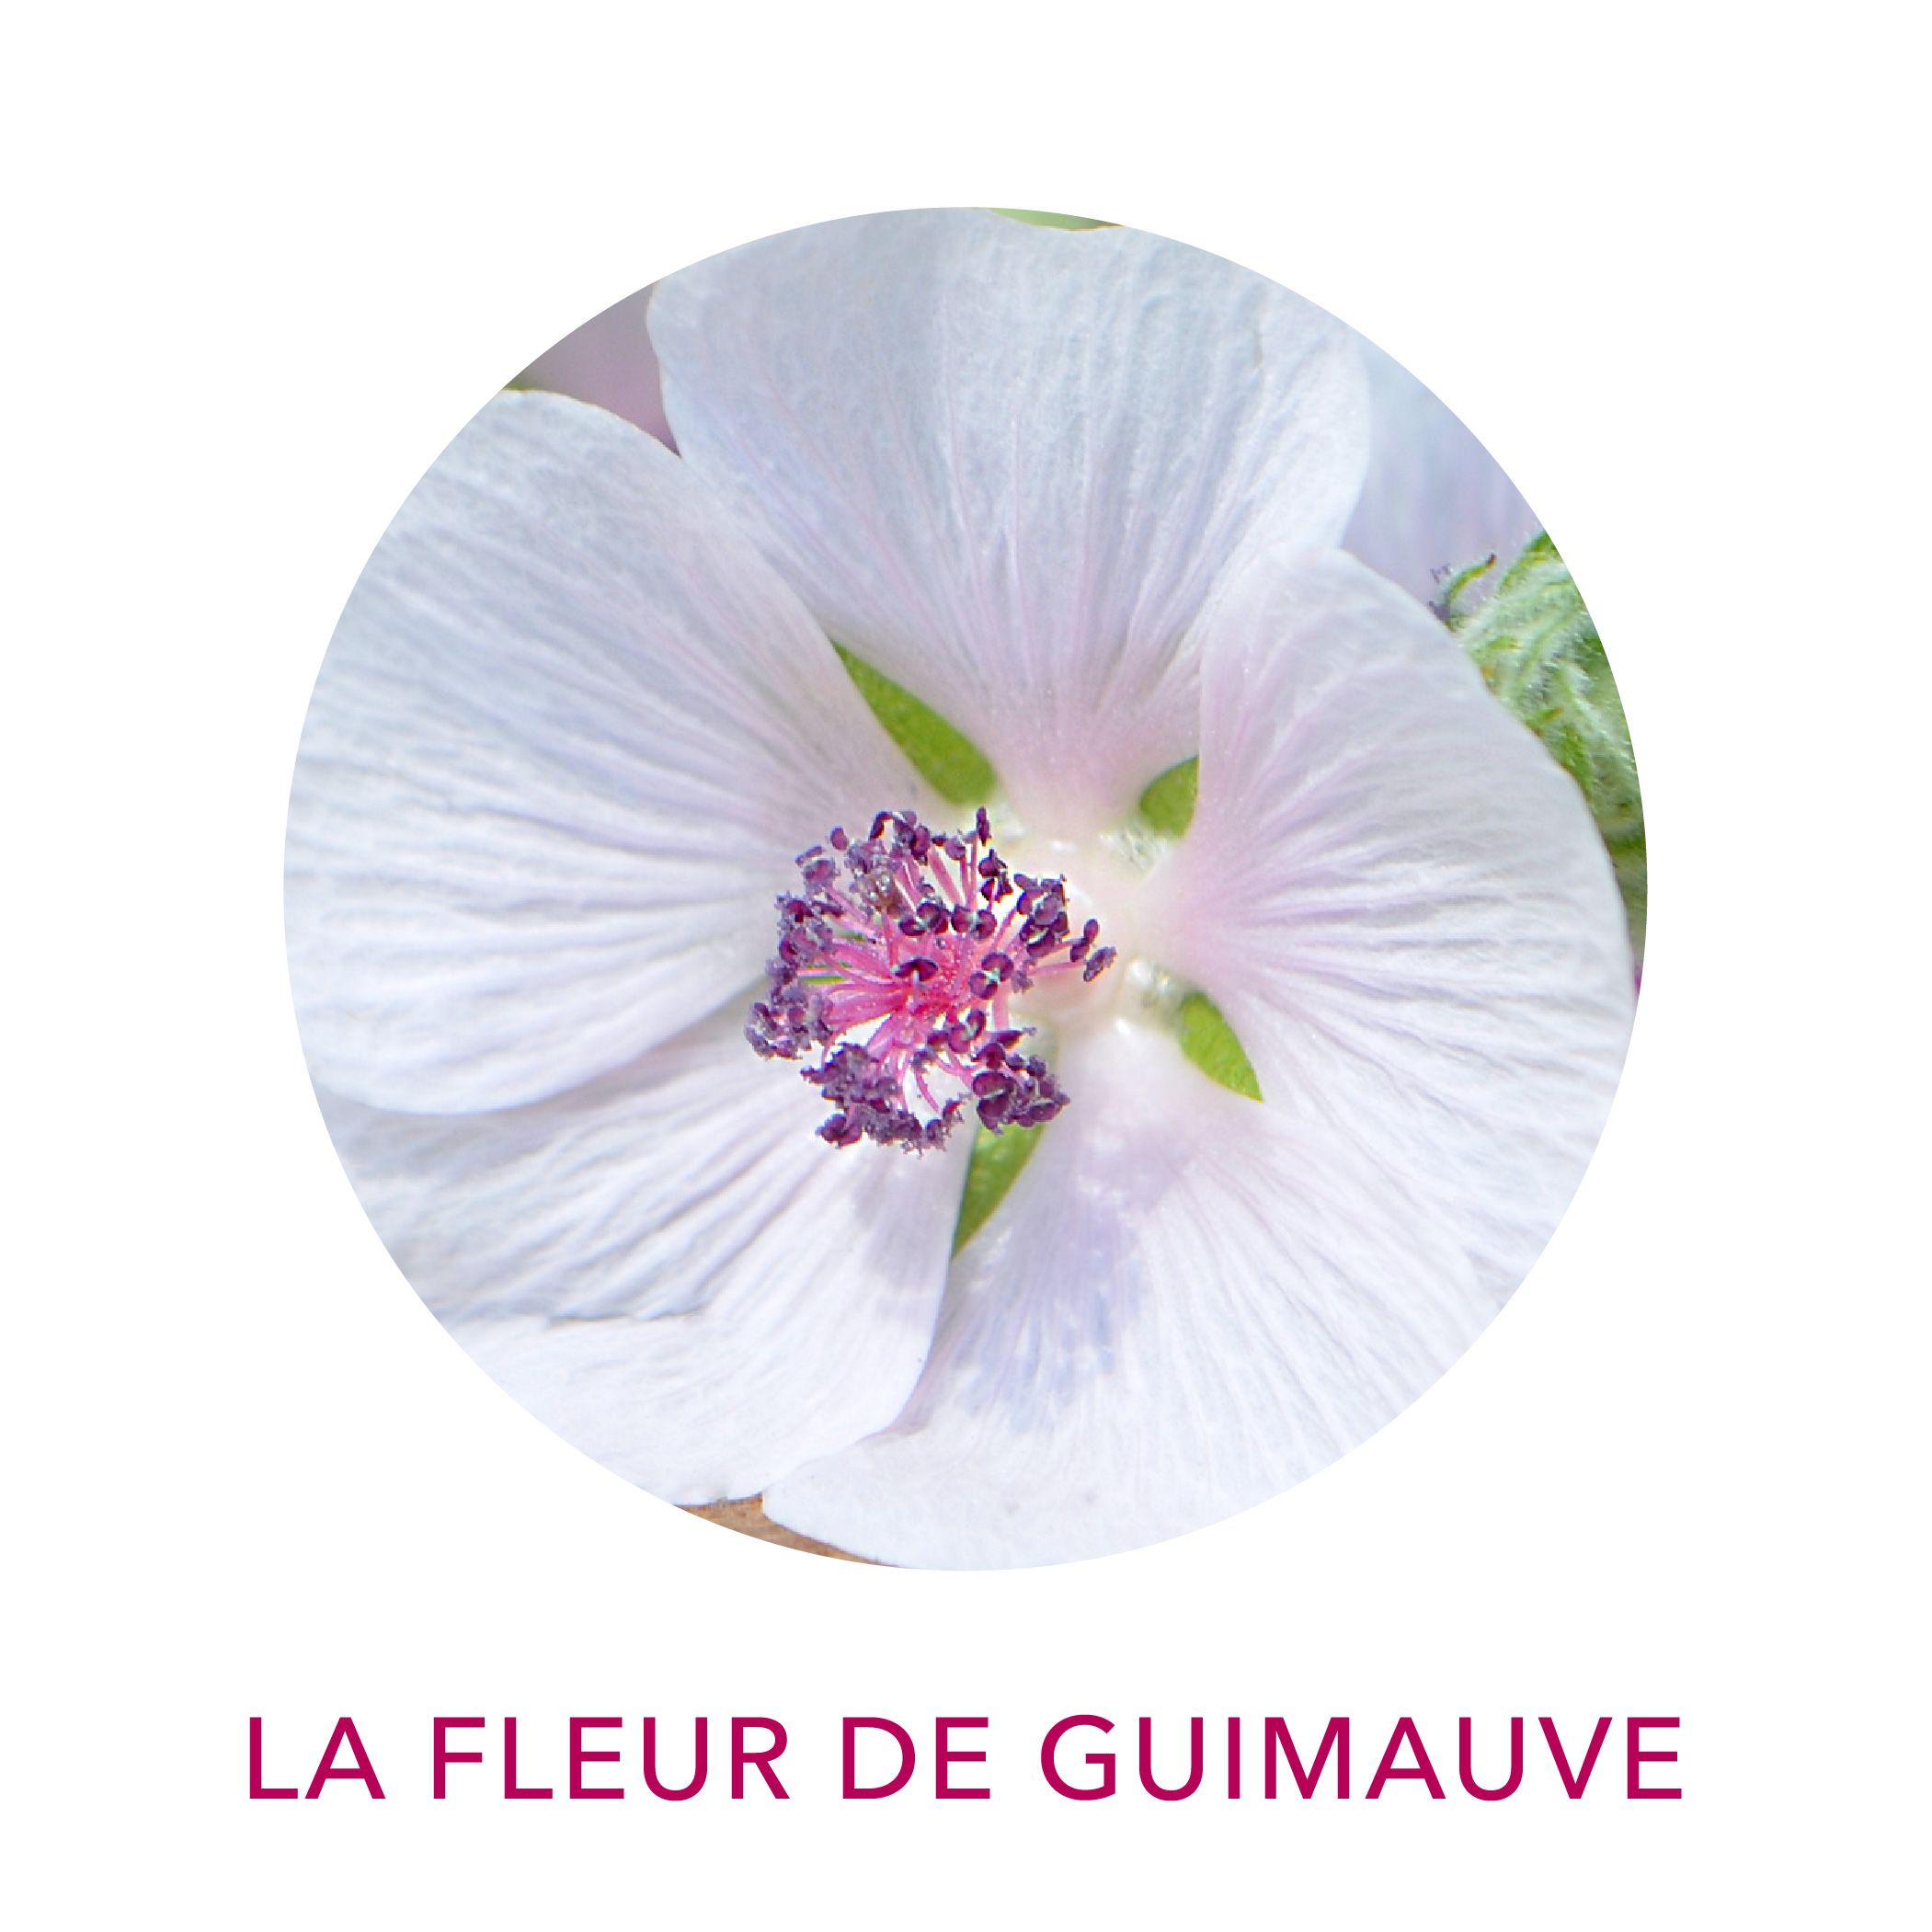 Actif cosmétique Clairjoie fleur de guimauve